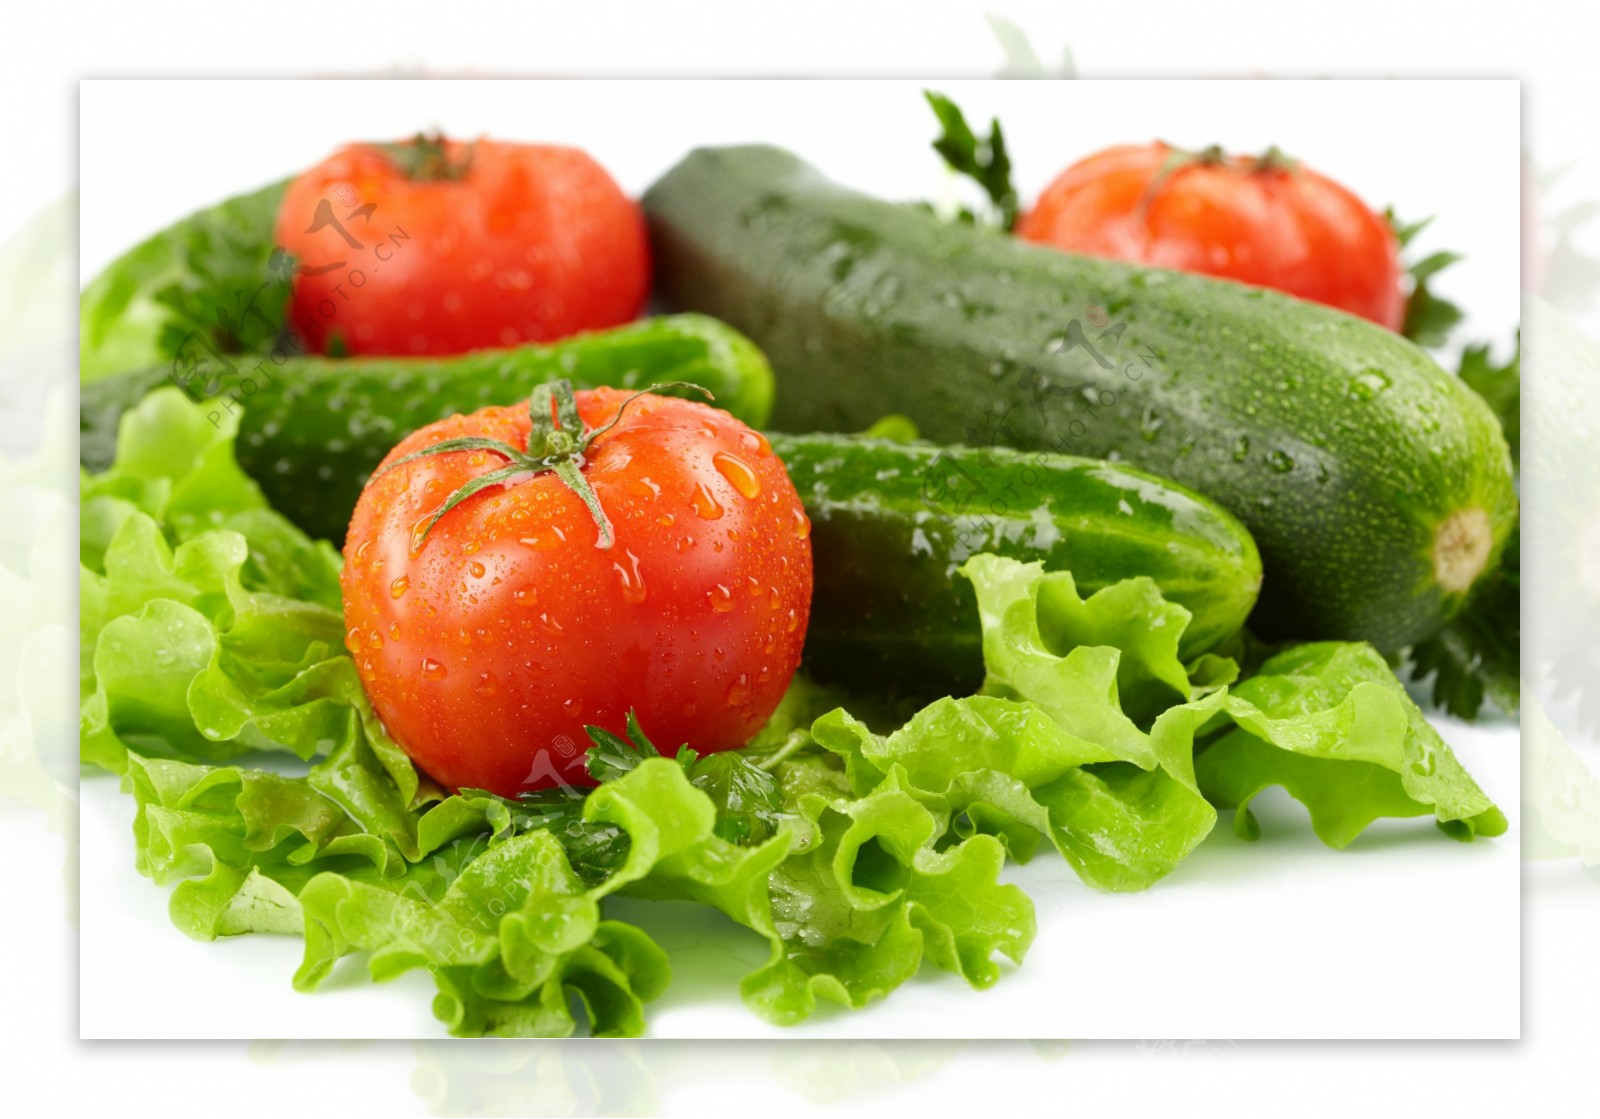 西红柿黄瓜各种蔬菜图片